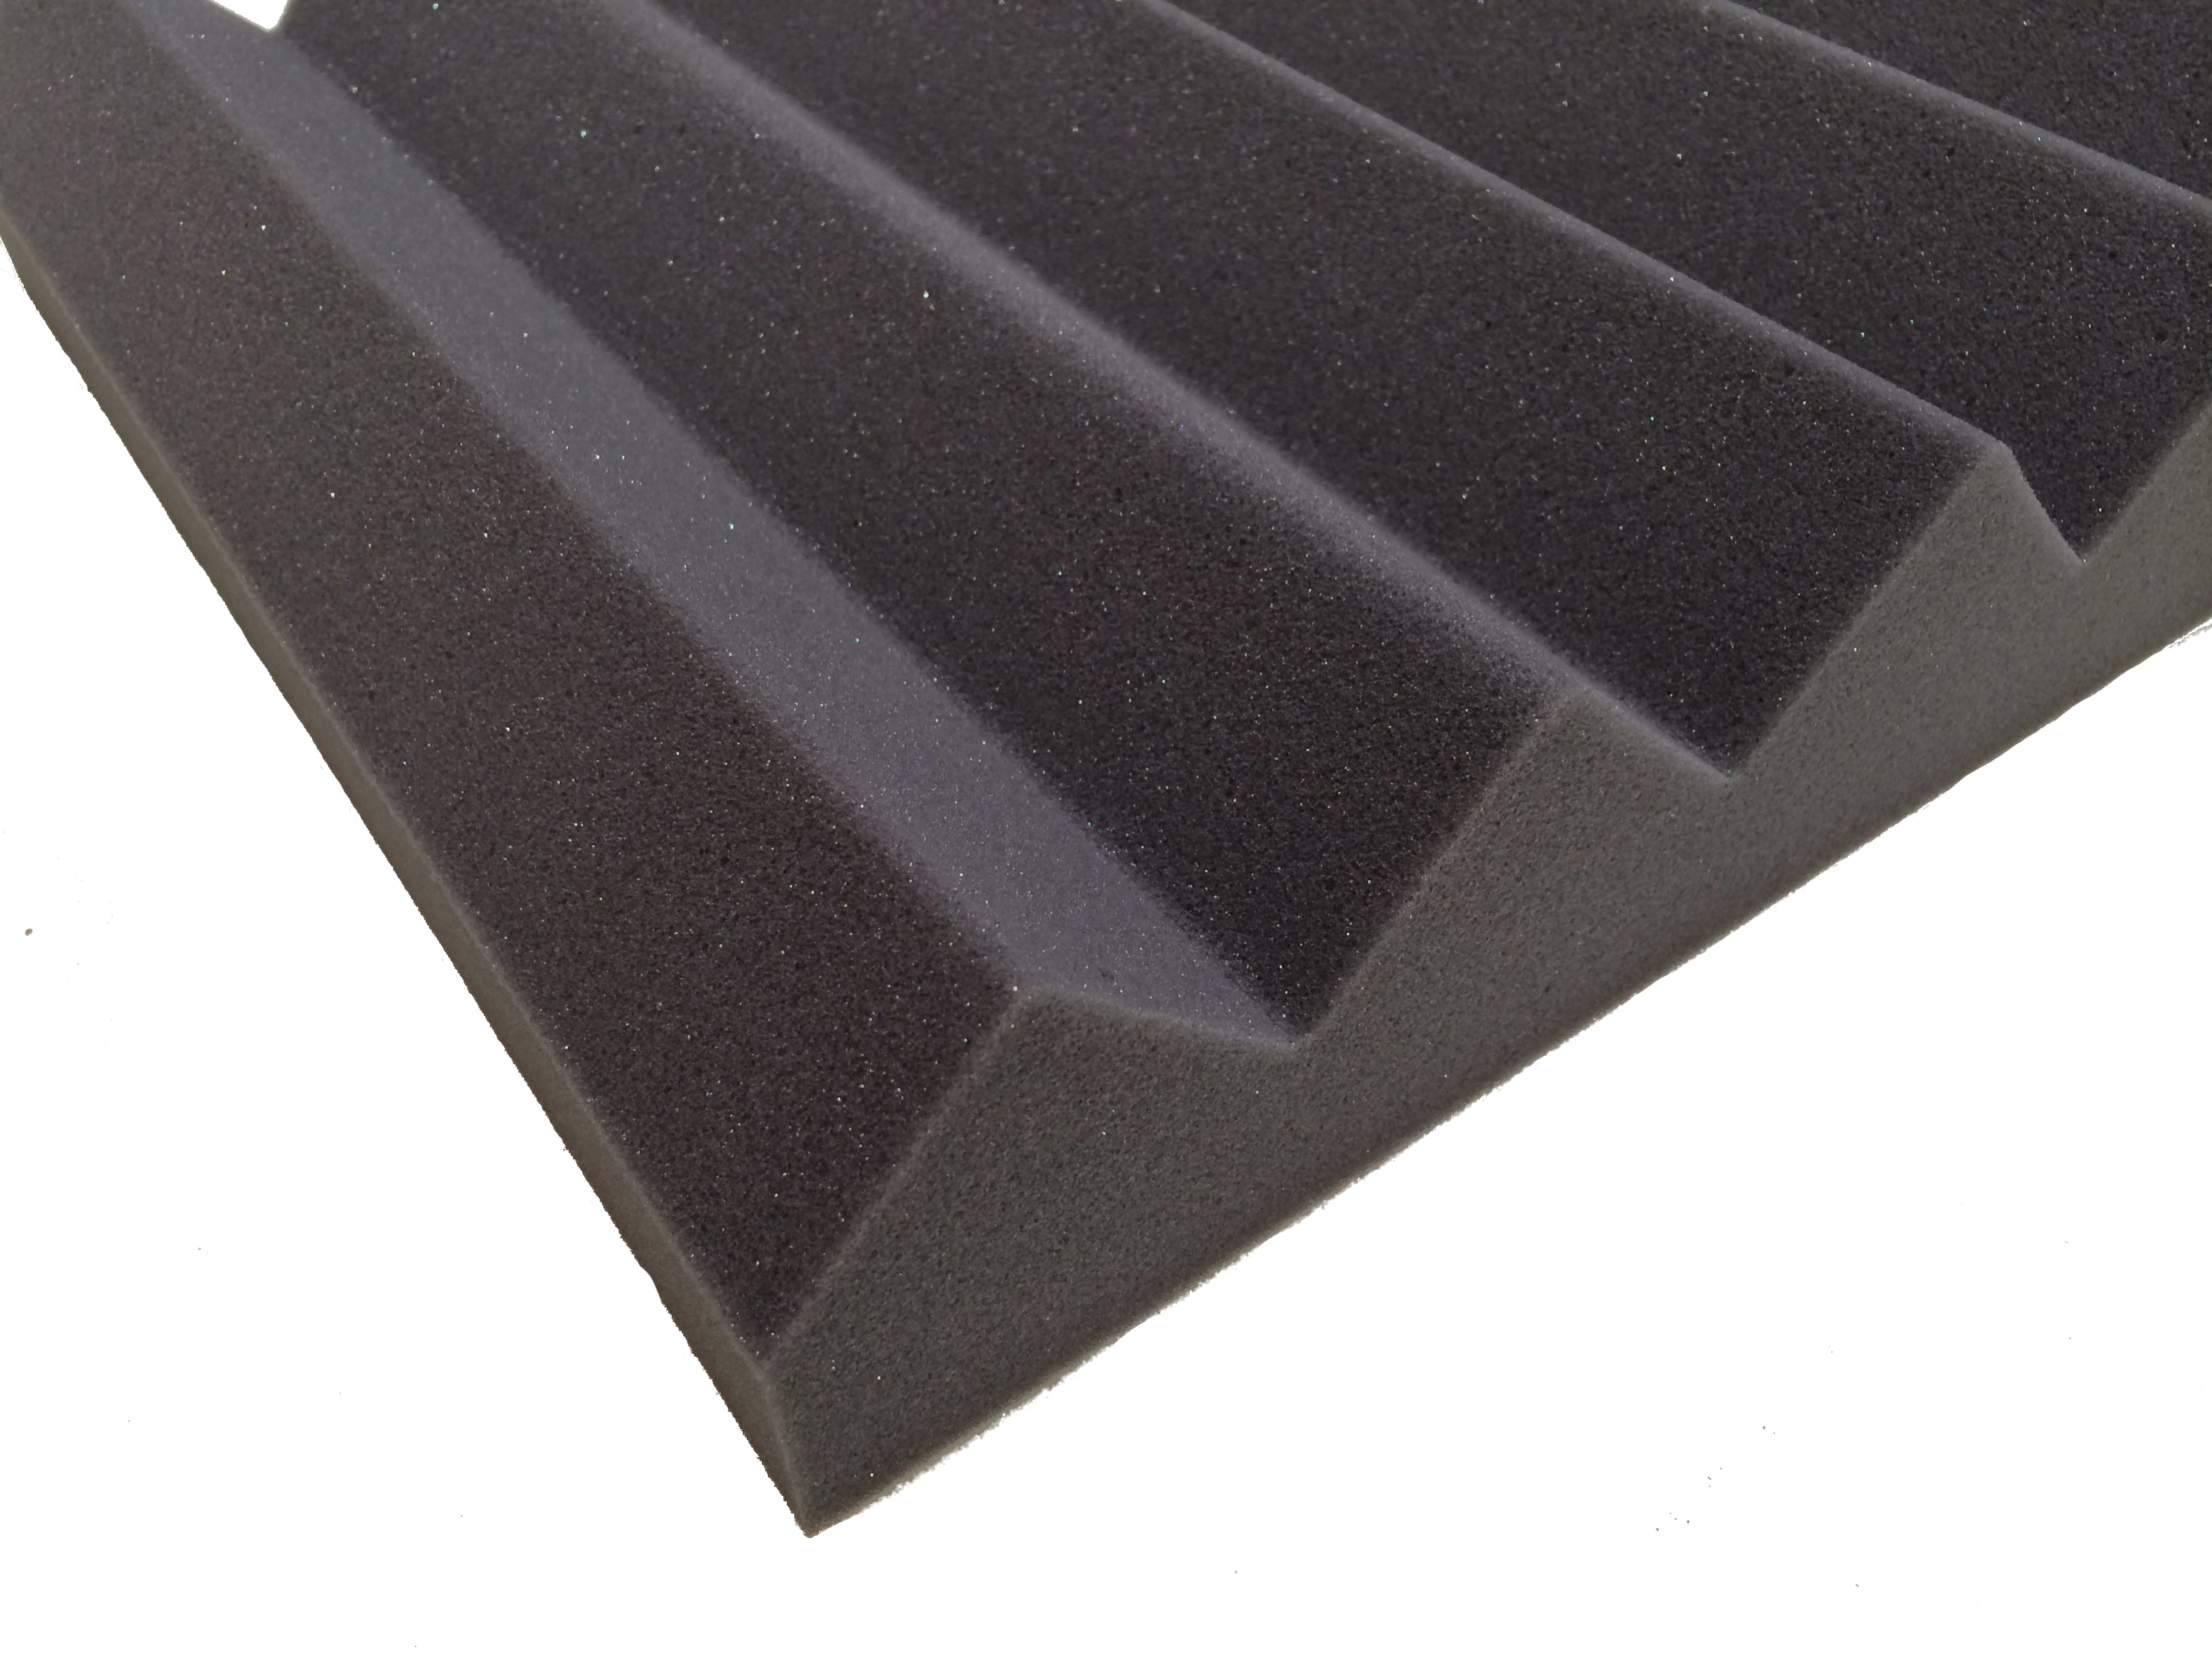 Wedge PRO 30" Acoustic Studio Foam Tile Kit - Advanced Acoustics